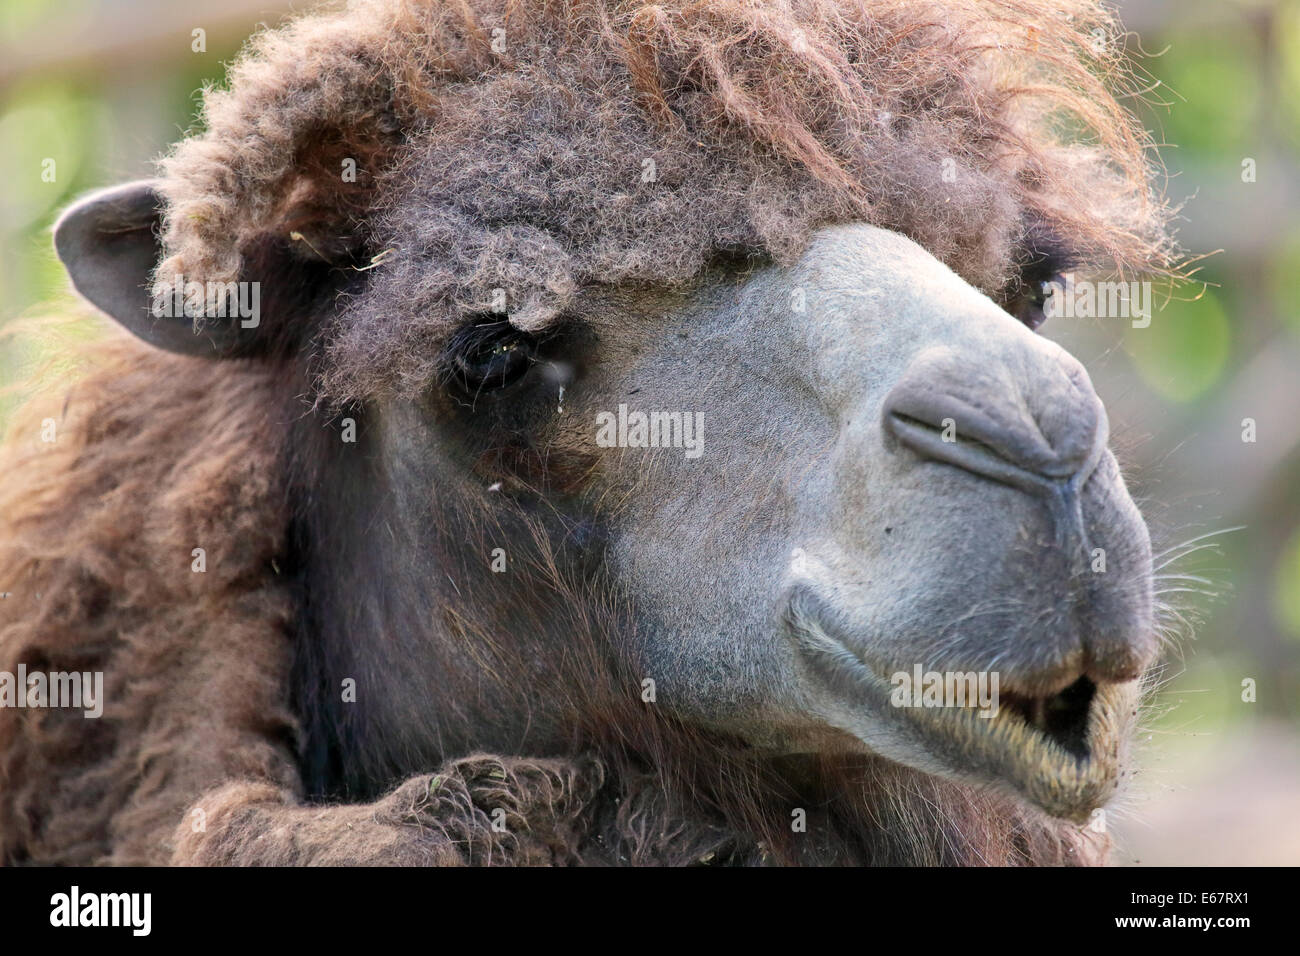 Portraif di bactrian camel (Camelus bactrianus), un grande mammifero dalle steppe dell'Asia centrale Foto Stock